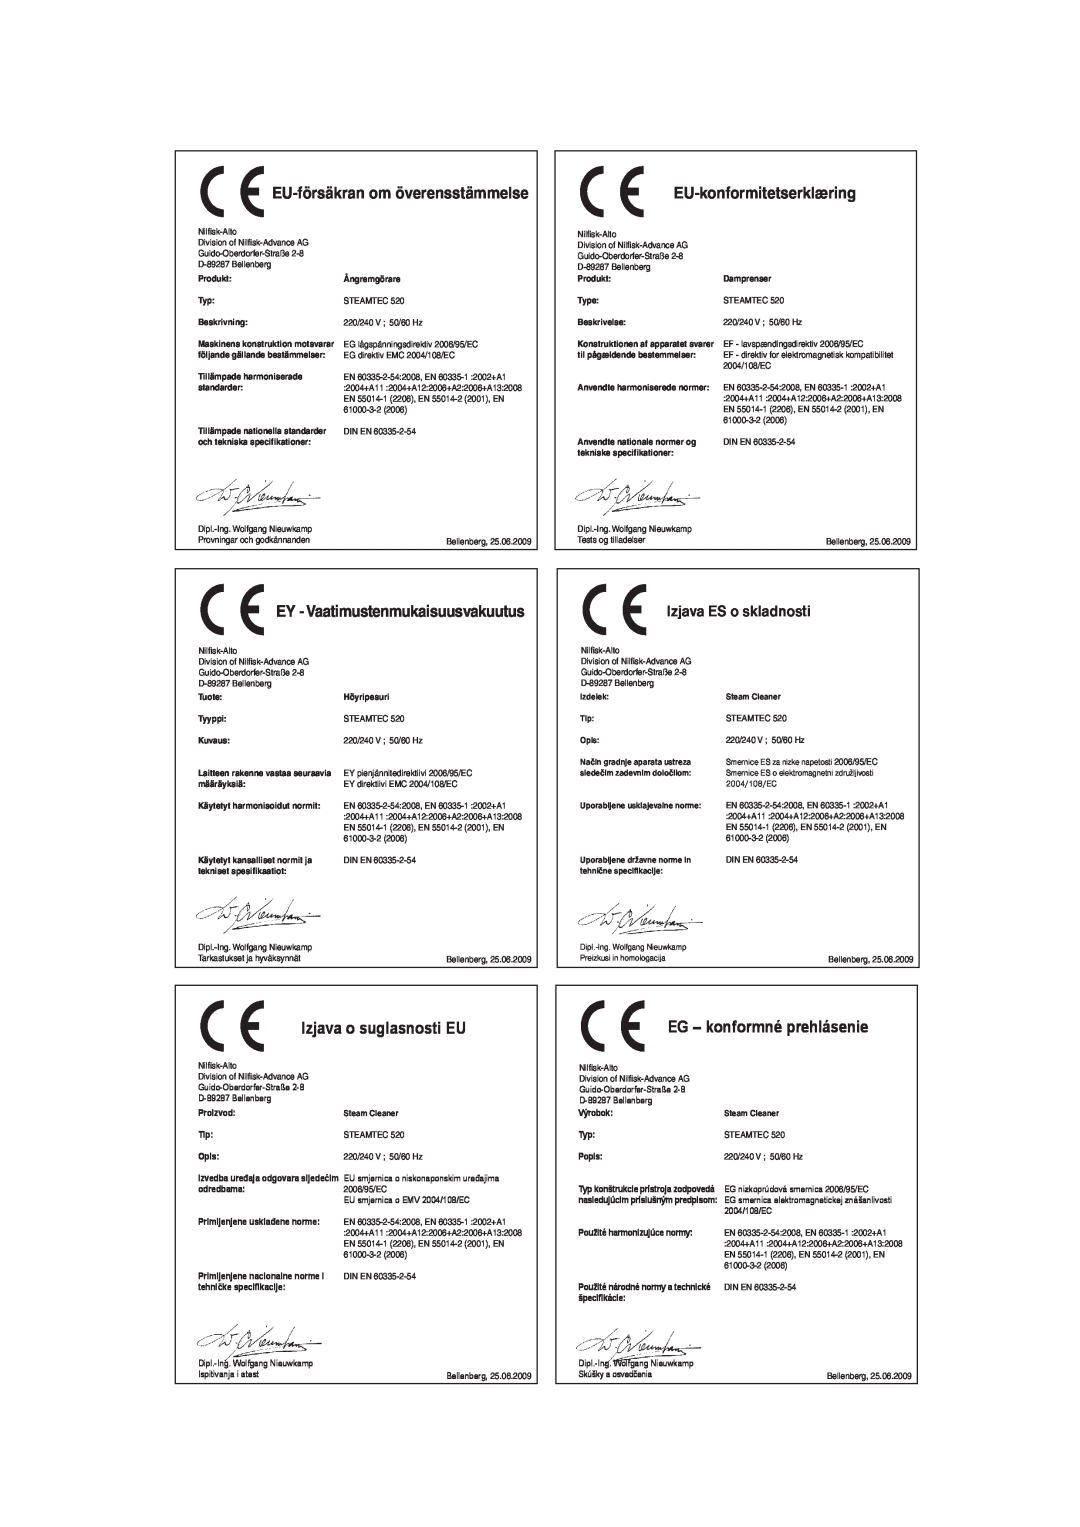 Nilfisk-ALTO 520 manual EU-försäkran om överensstämmelse, EU-konformitetserklæring, EY - Vaatimustenmukaisuusvakuutus 